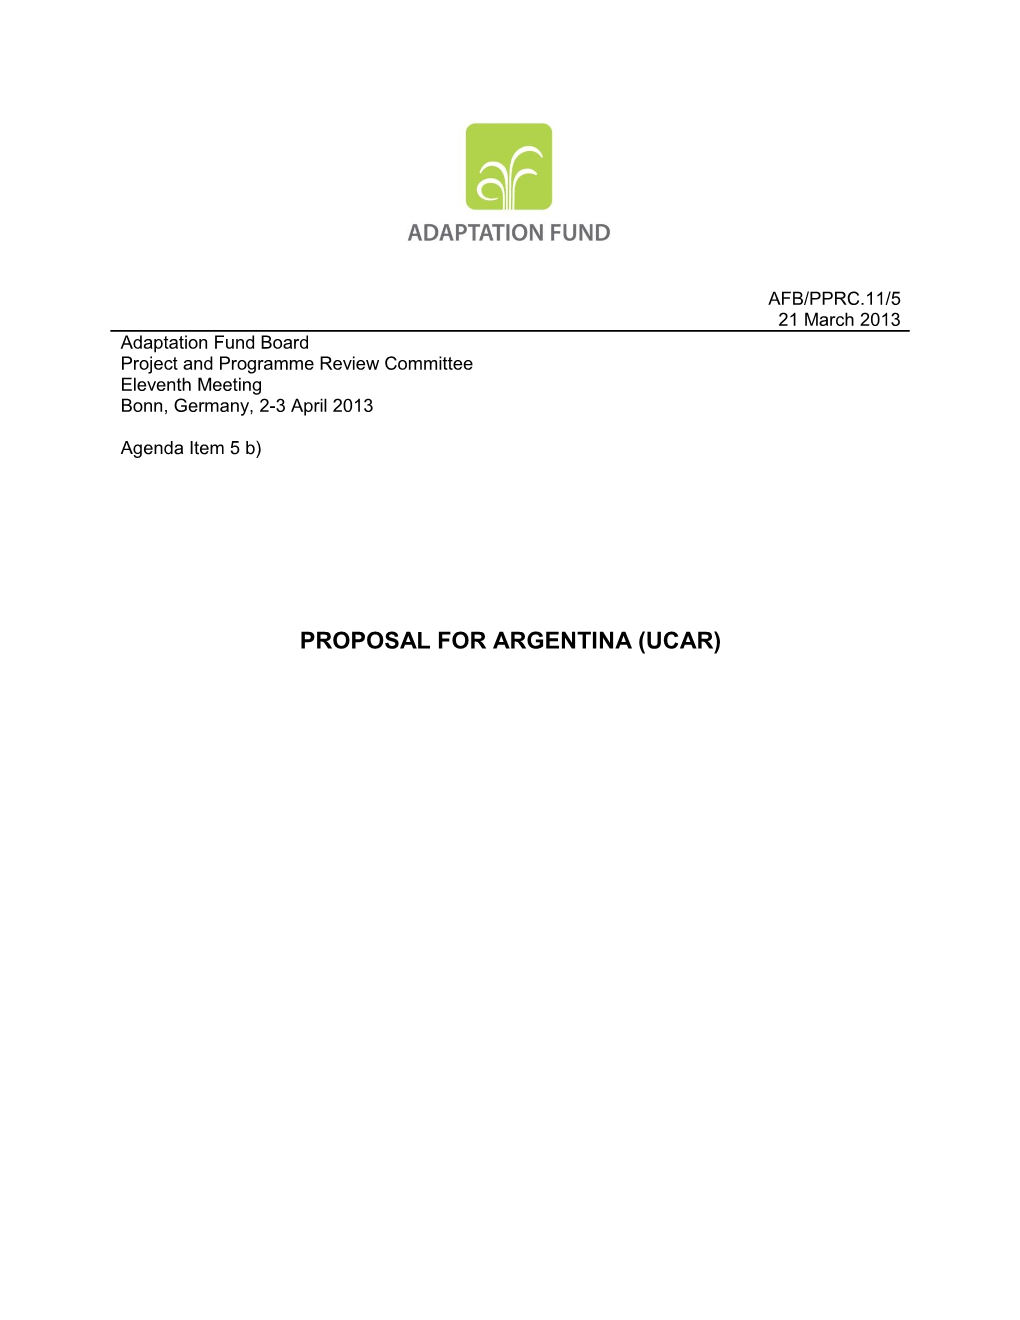 Proposal for Argentina (Ucar)